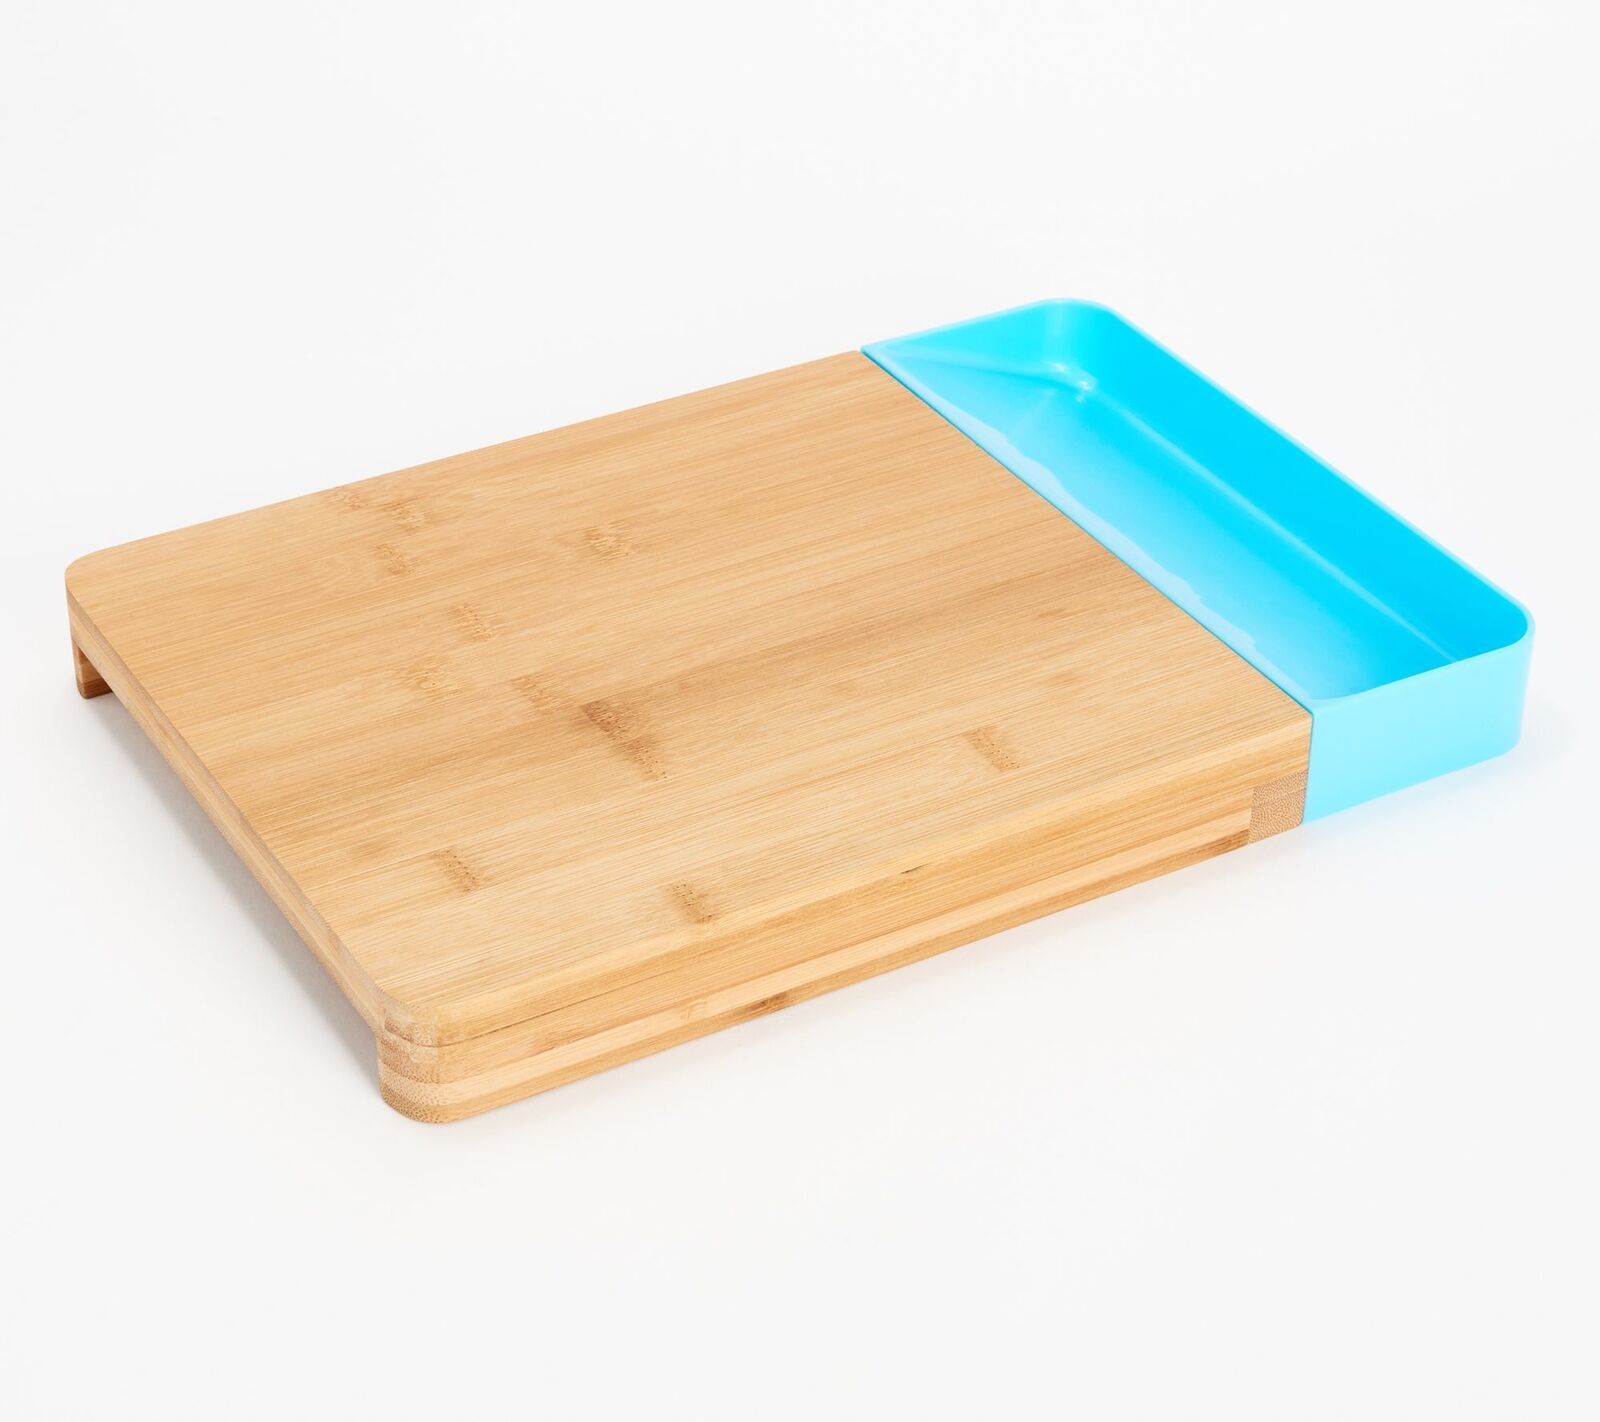 Cook's Essentials Bamboo Wood Cutting Board w/ Scrap Tray in Aqua - $29.09